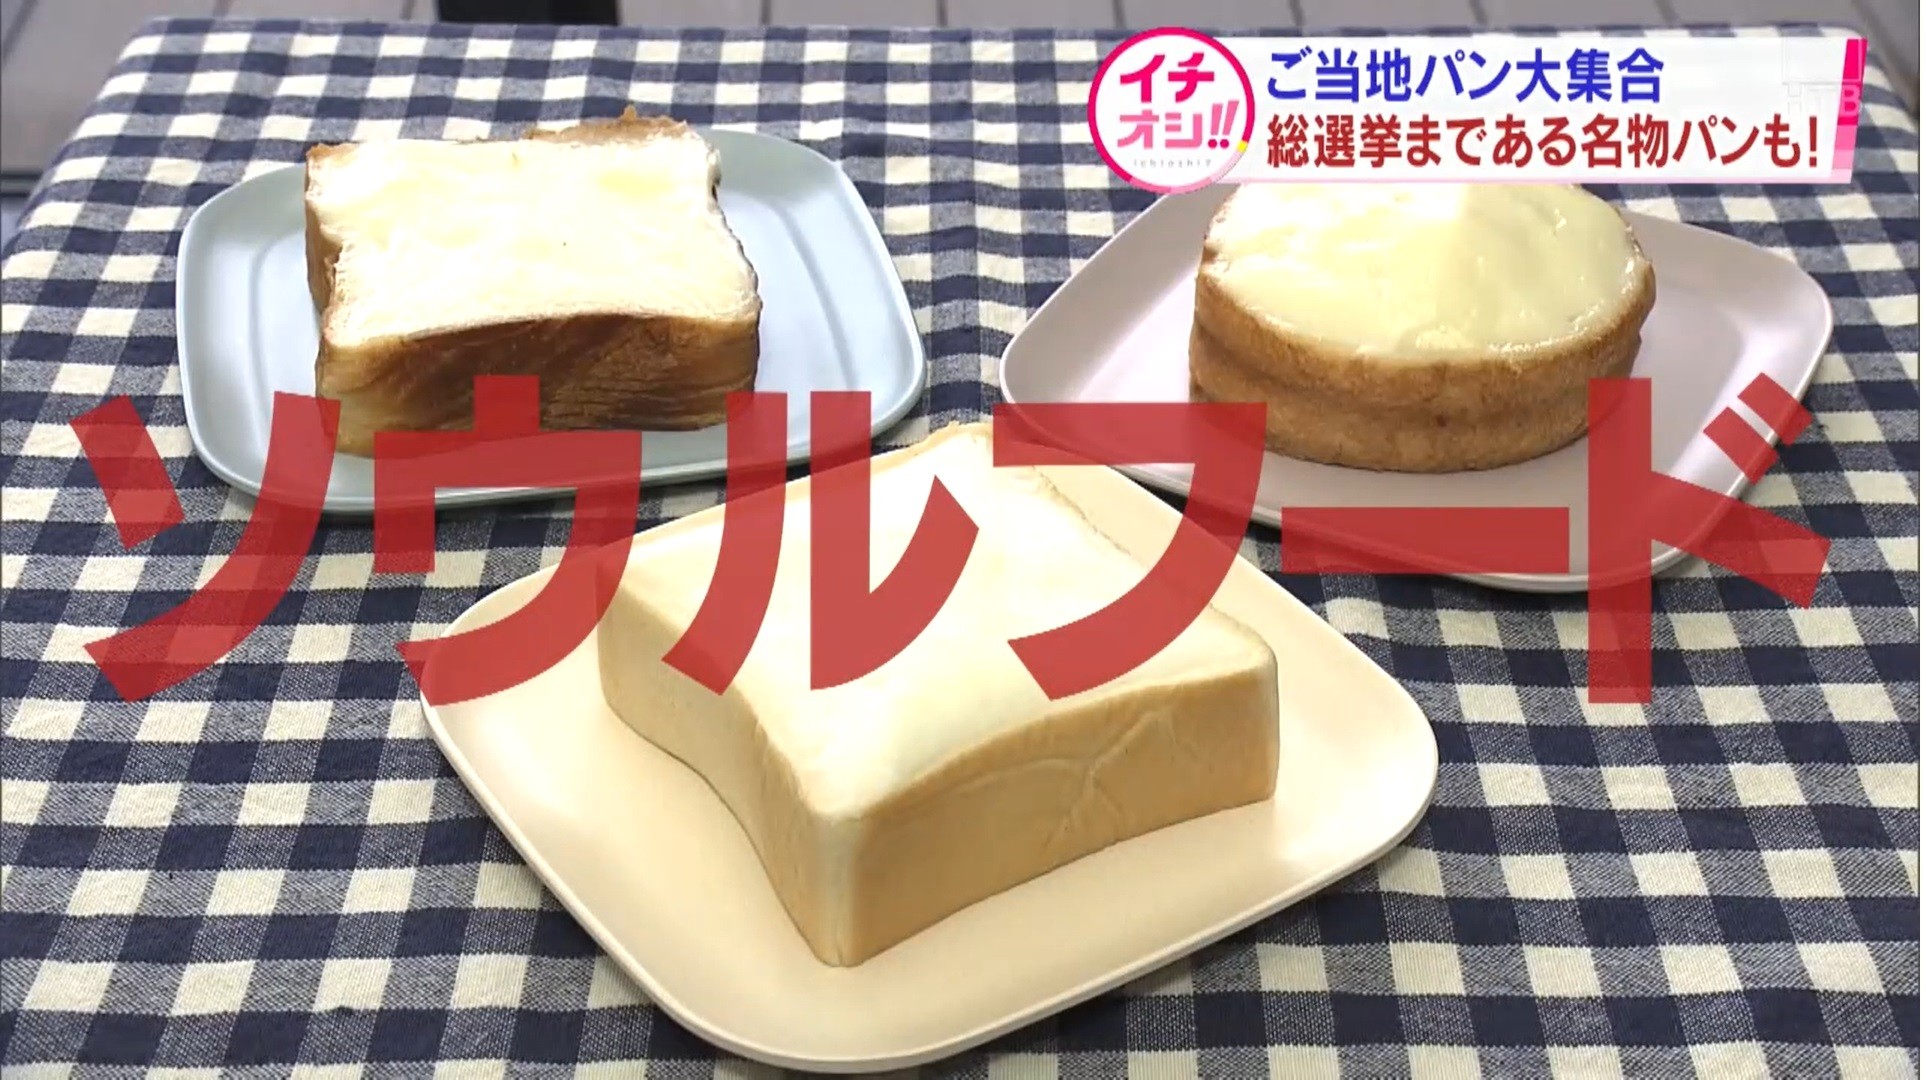 パンで里帰り 福島県のご当地パンを札幌で Htb 北海道ニュース